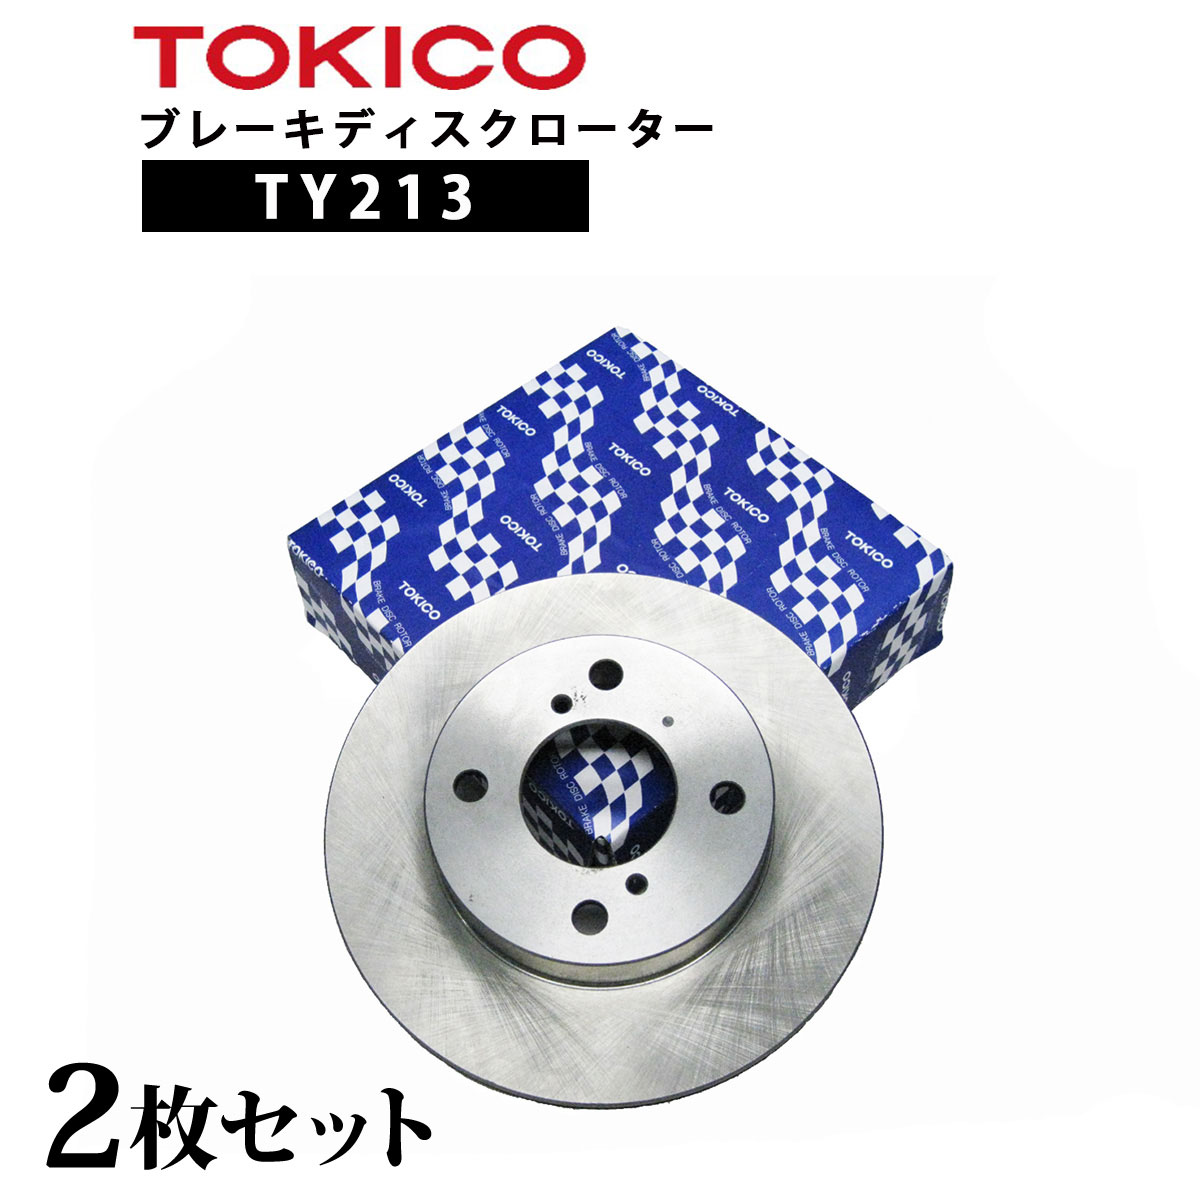 TY213 TOKICO ֥졼ǥ  2 å ȥ Ω| Ŭ  ۥ 42510-S0A-000  R CF3/4 ¾ RH111 E5009 H6-104B